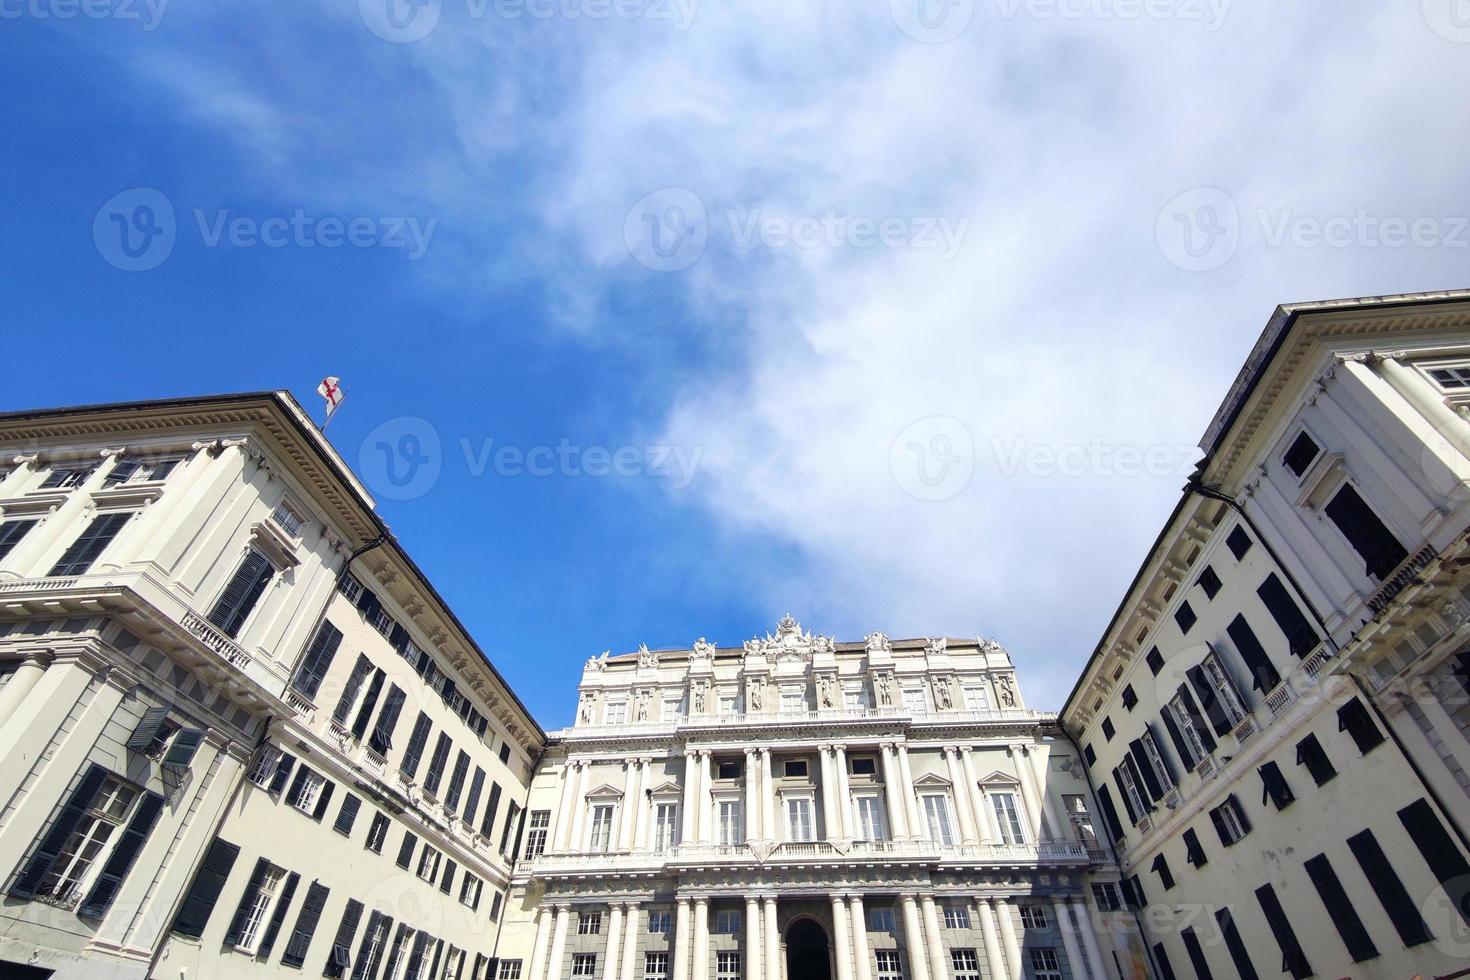 ducal palais dans Gênes historique bâtiment photo